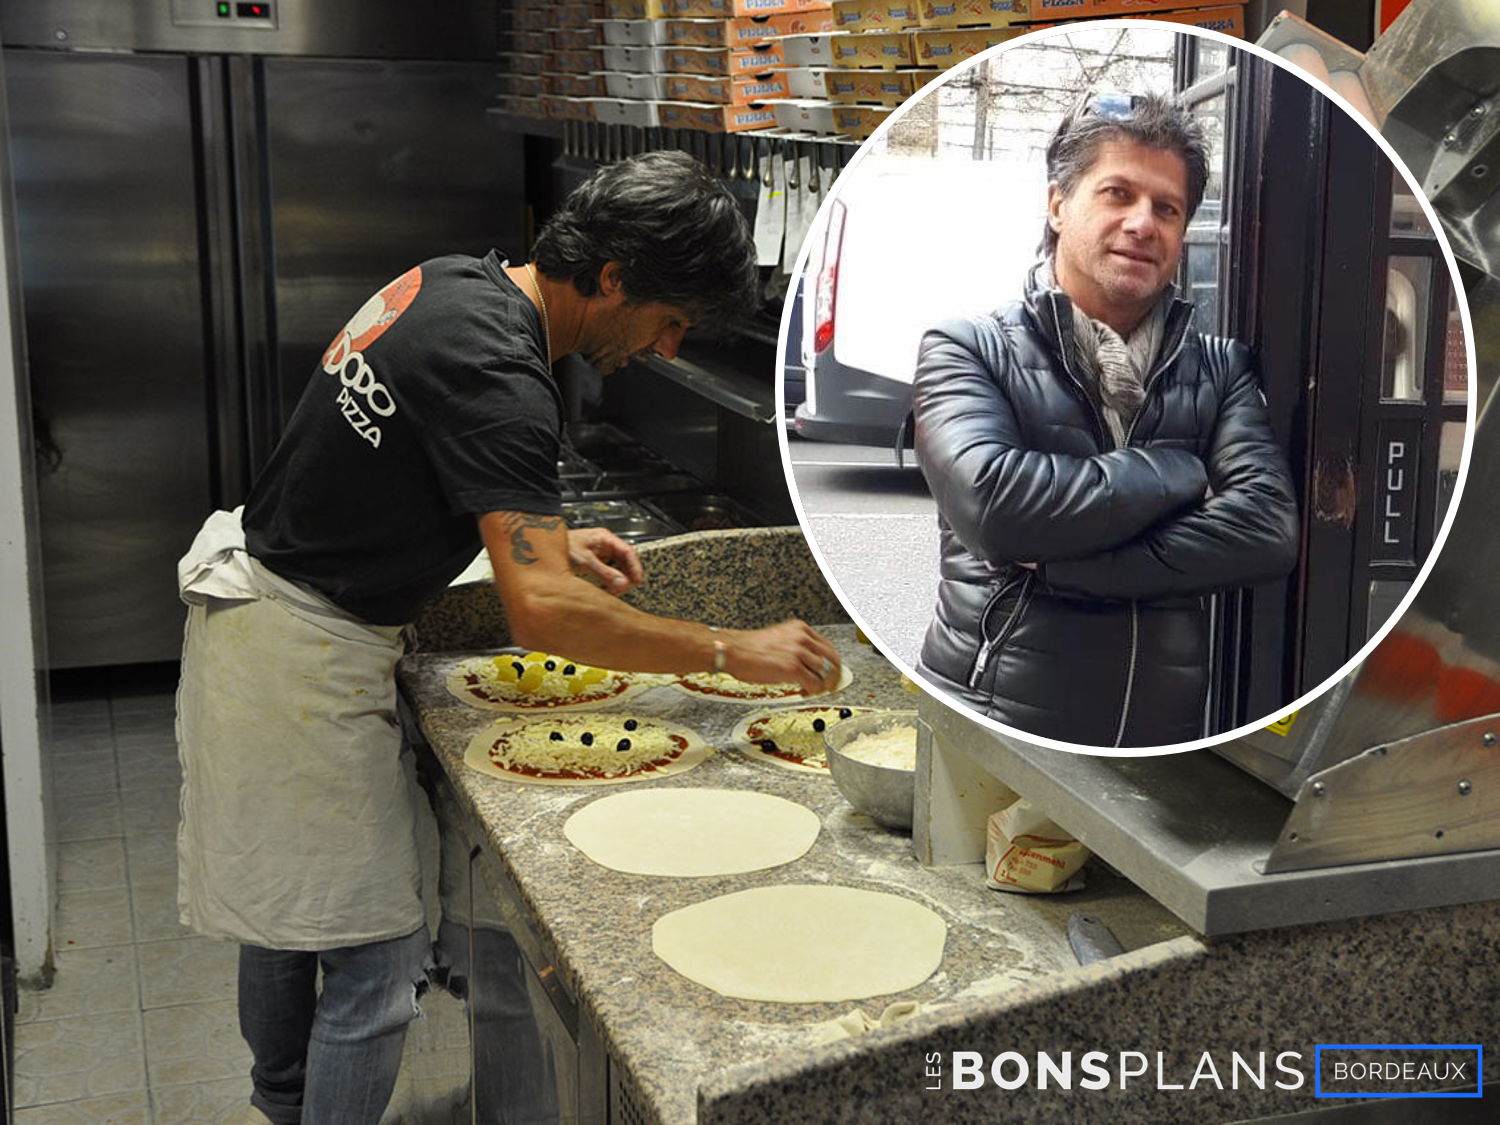 Les Bons Plans présentent : l'interview rapido "Mon Bassin" avec Olivier Zanit, gérant de "Dodo Pizza".